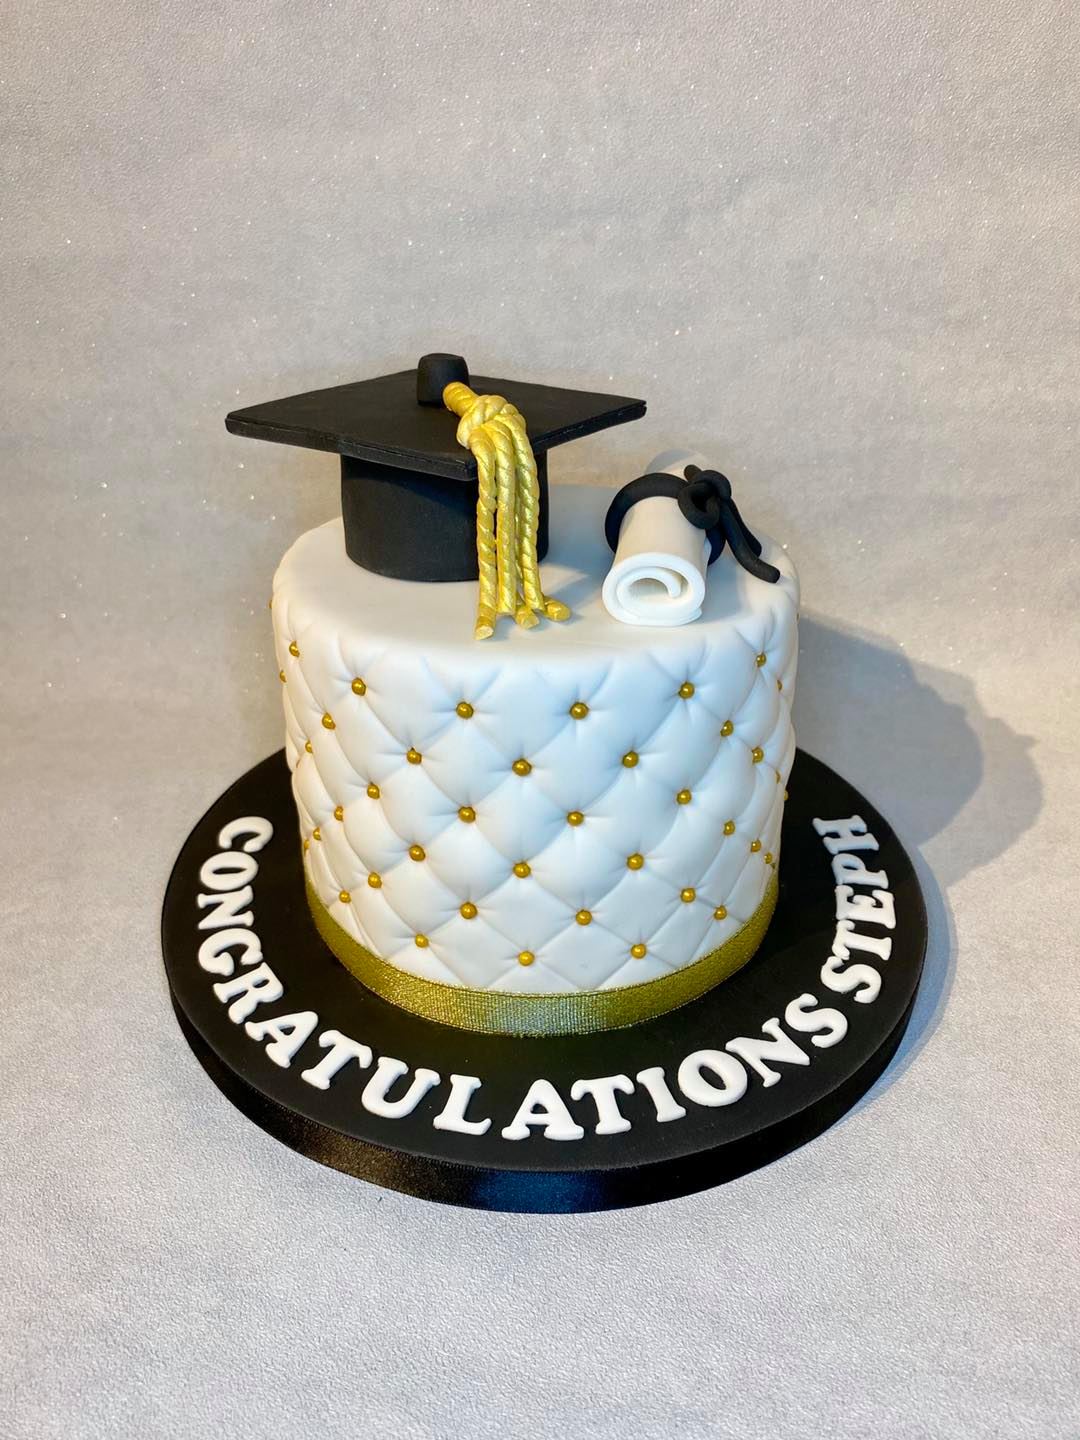 creative graduation cake ideas